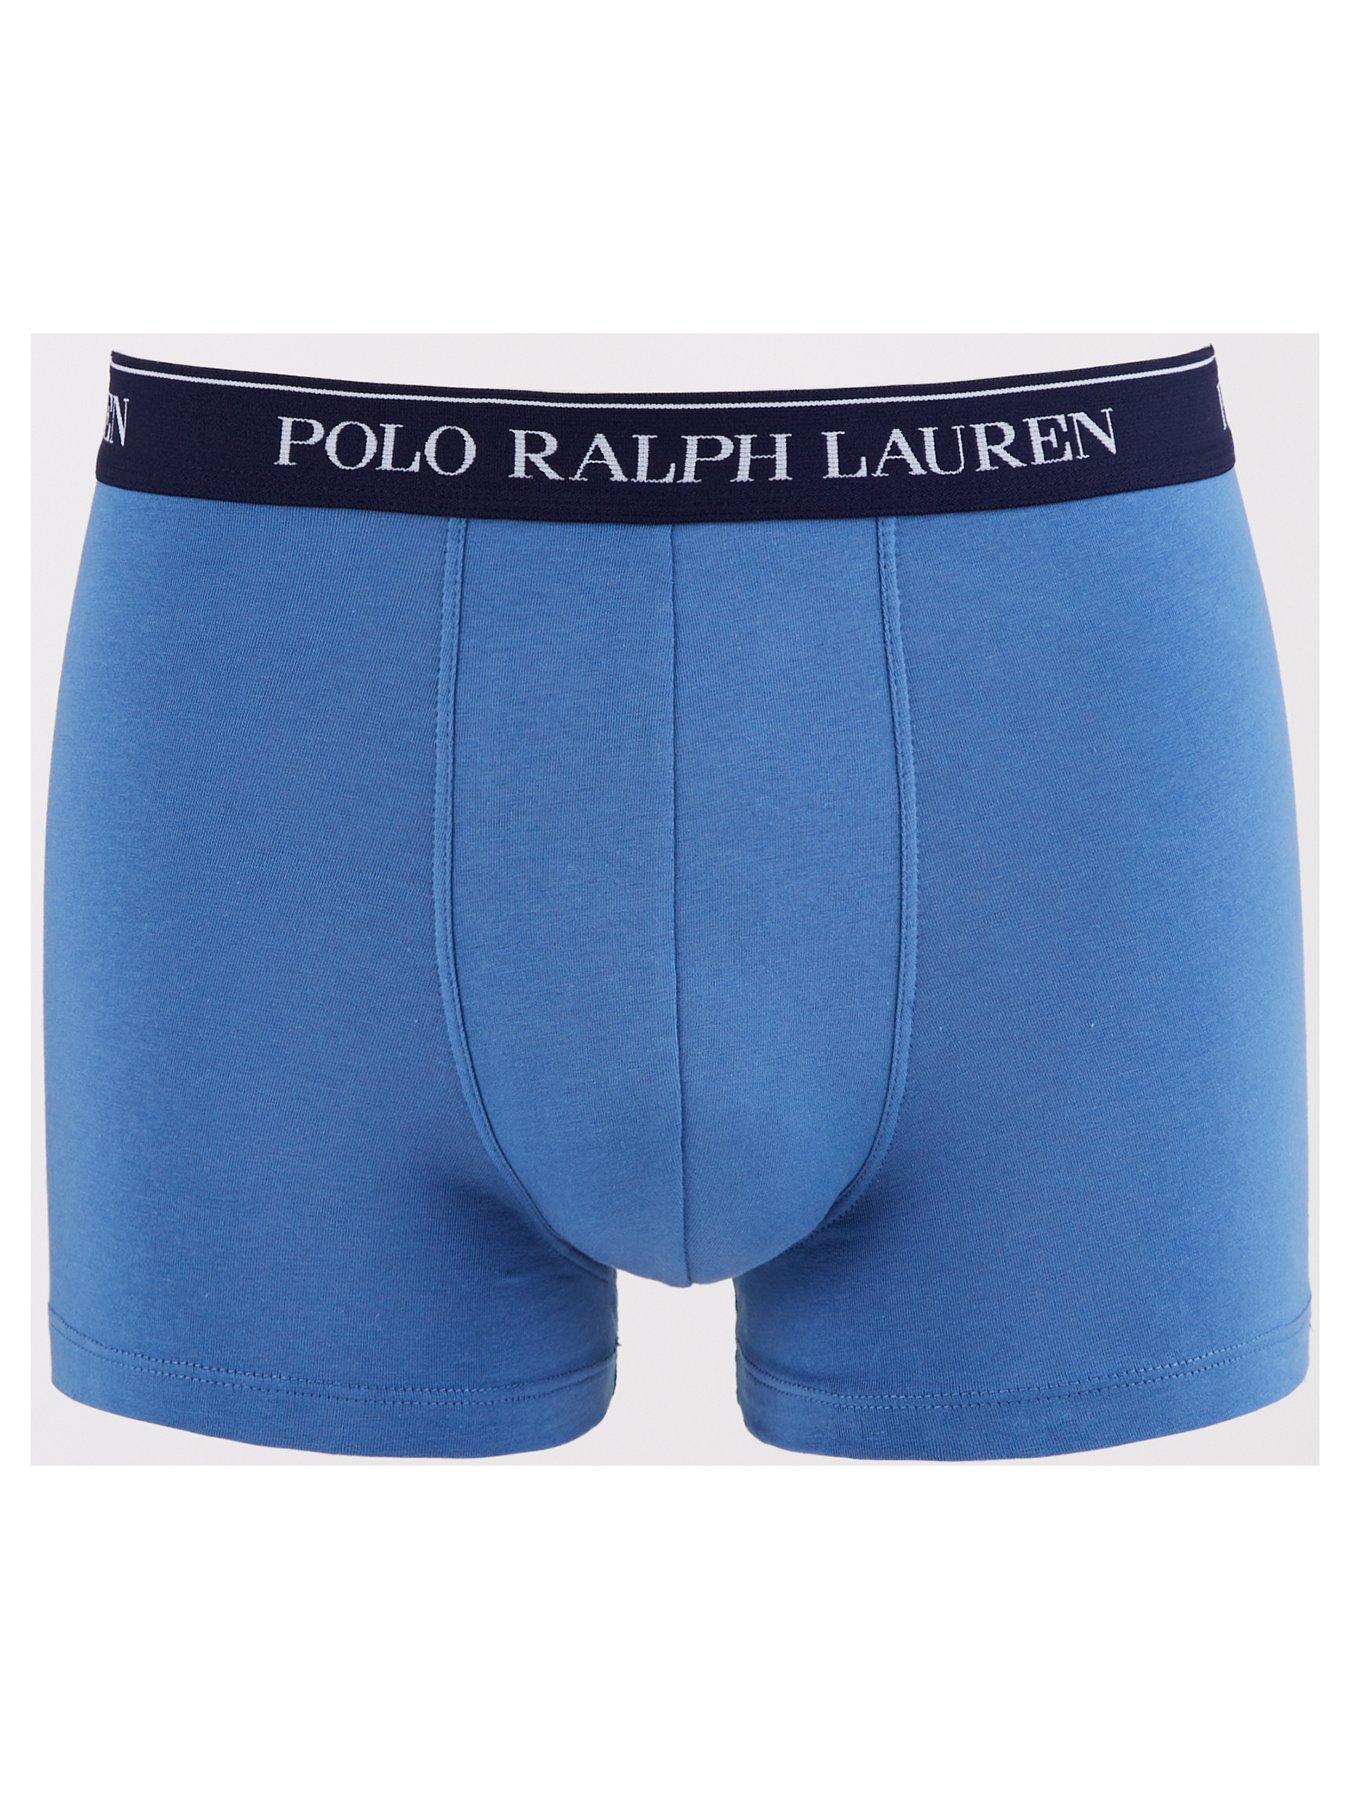 Polo Ralph Lauren Classic 3 Pack Trunks - Multi